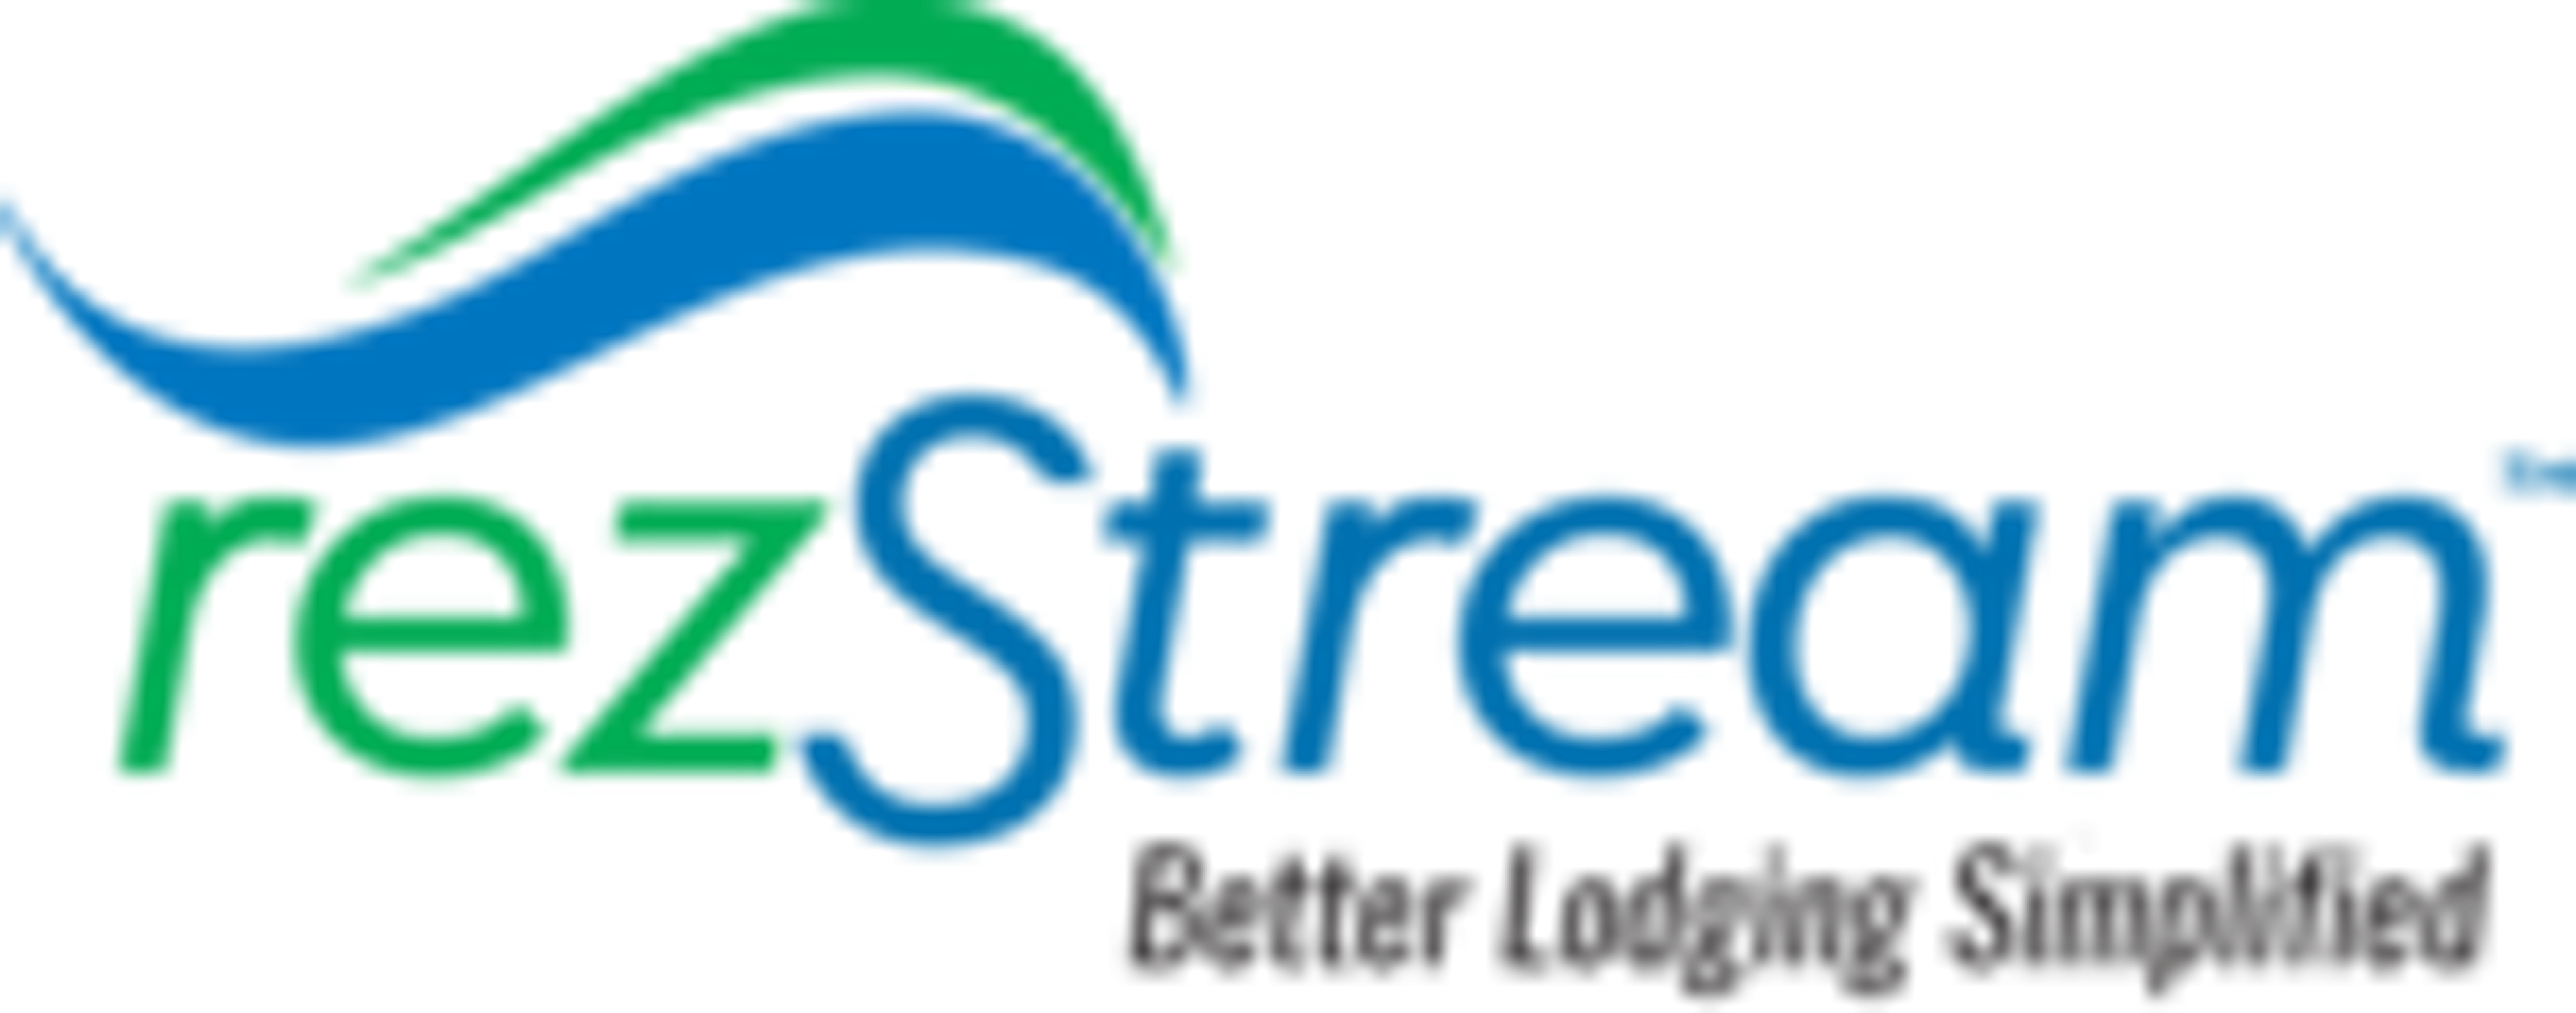 rezStream Logo